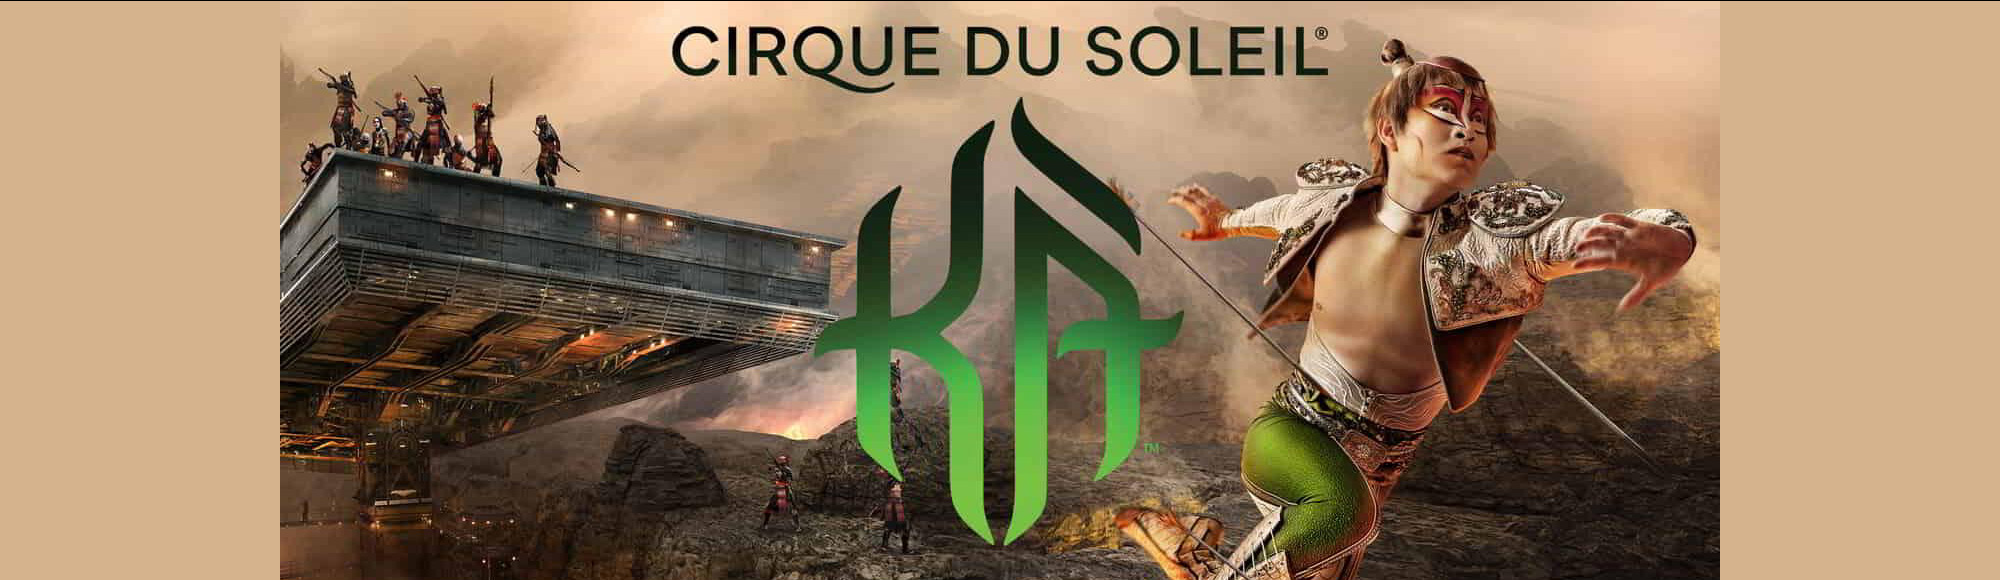 KÀ by Cirque du Soleil show